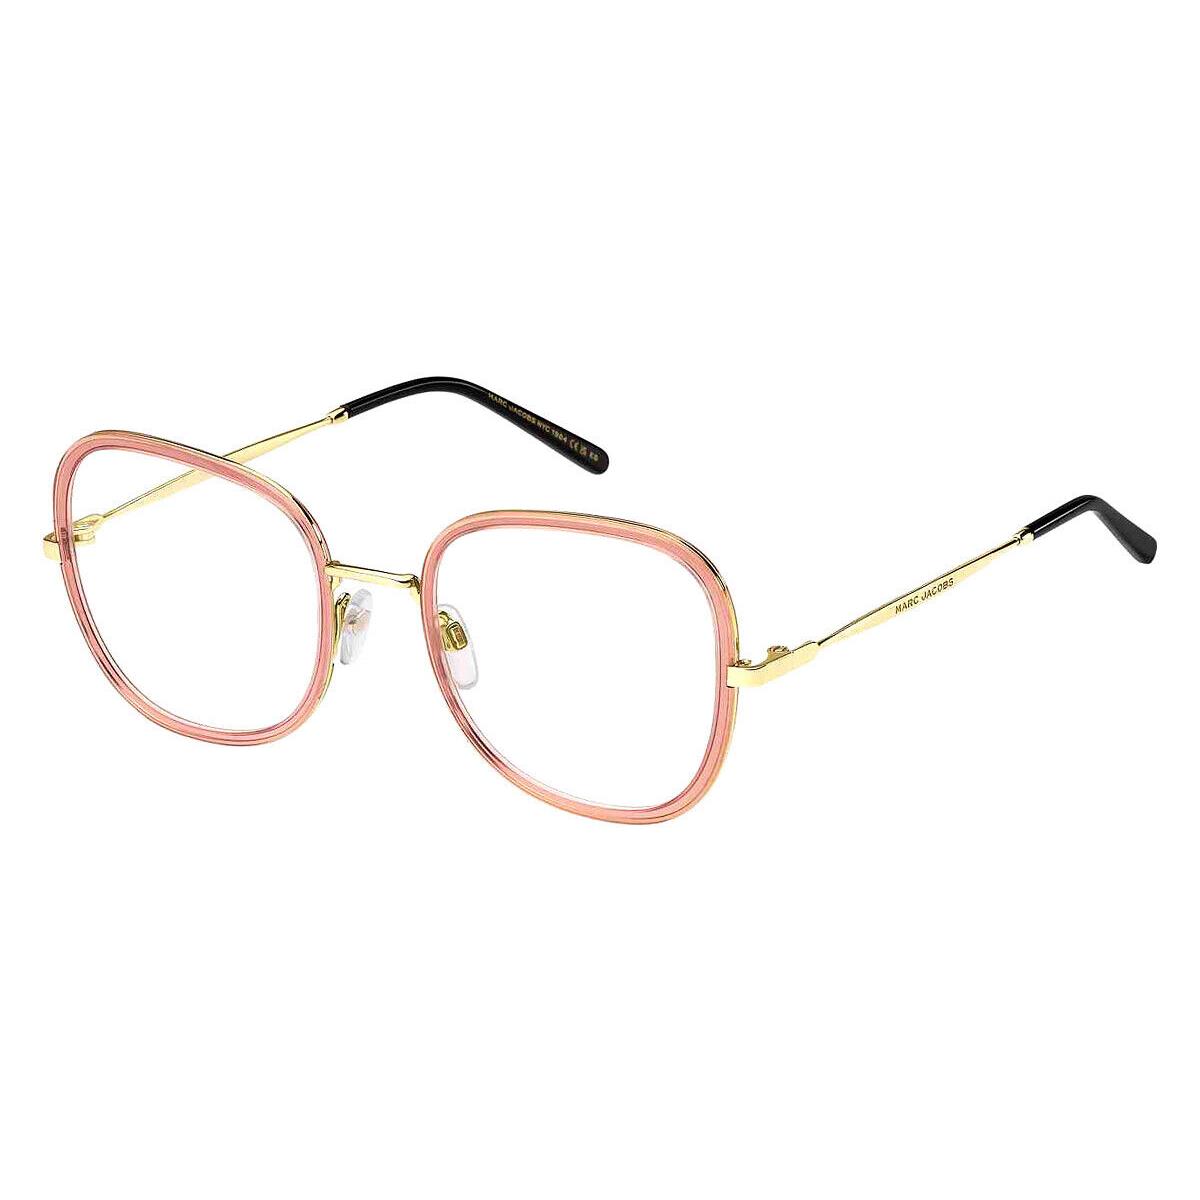 Marc Jacobs Mjb Eyeglasses Women Pink Gold 0S45 53mm - Frame: Pink Gold 0S45, Lens: Demo